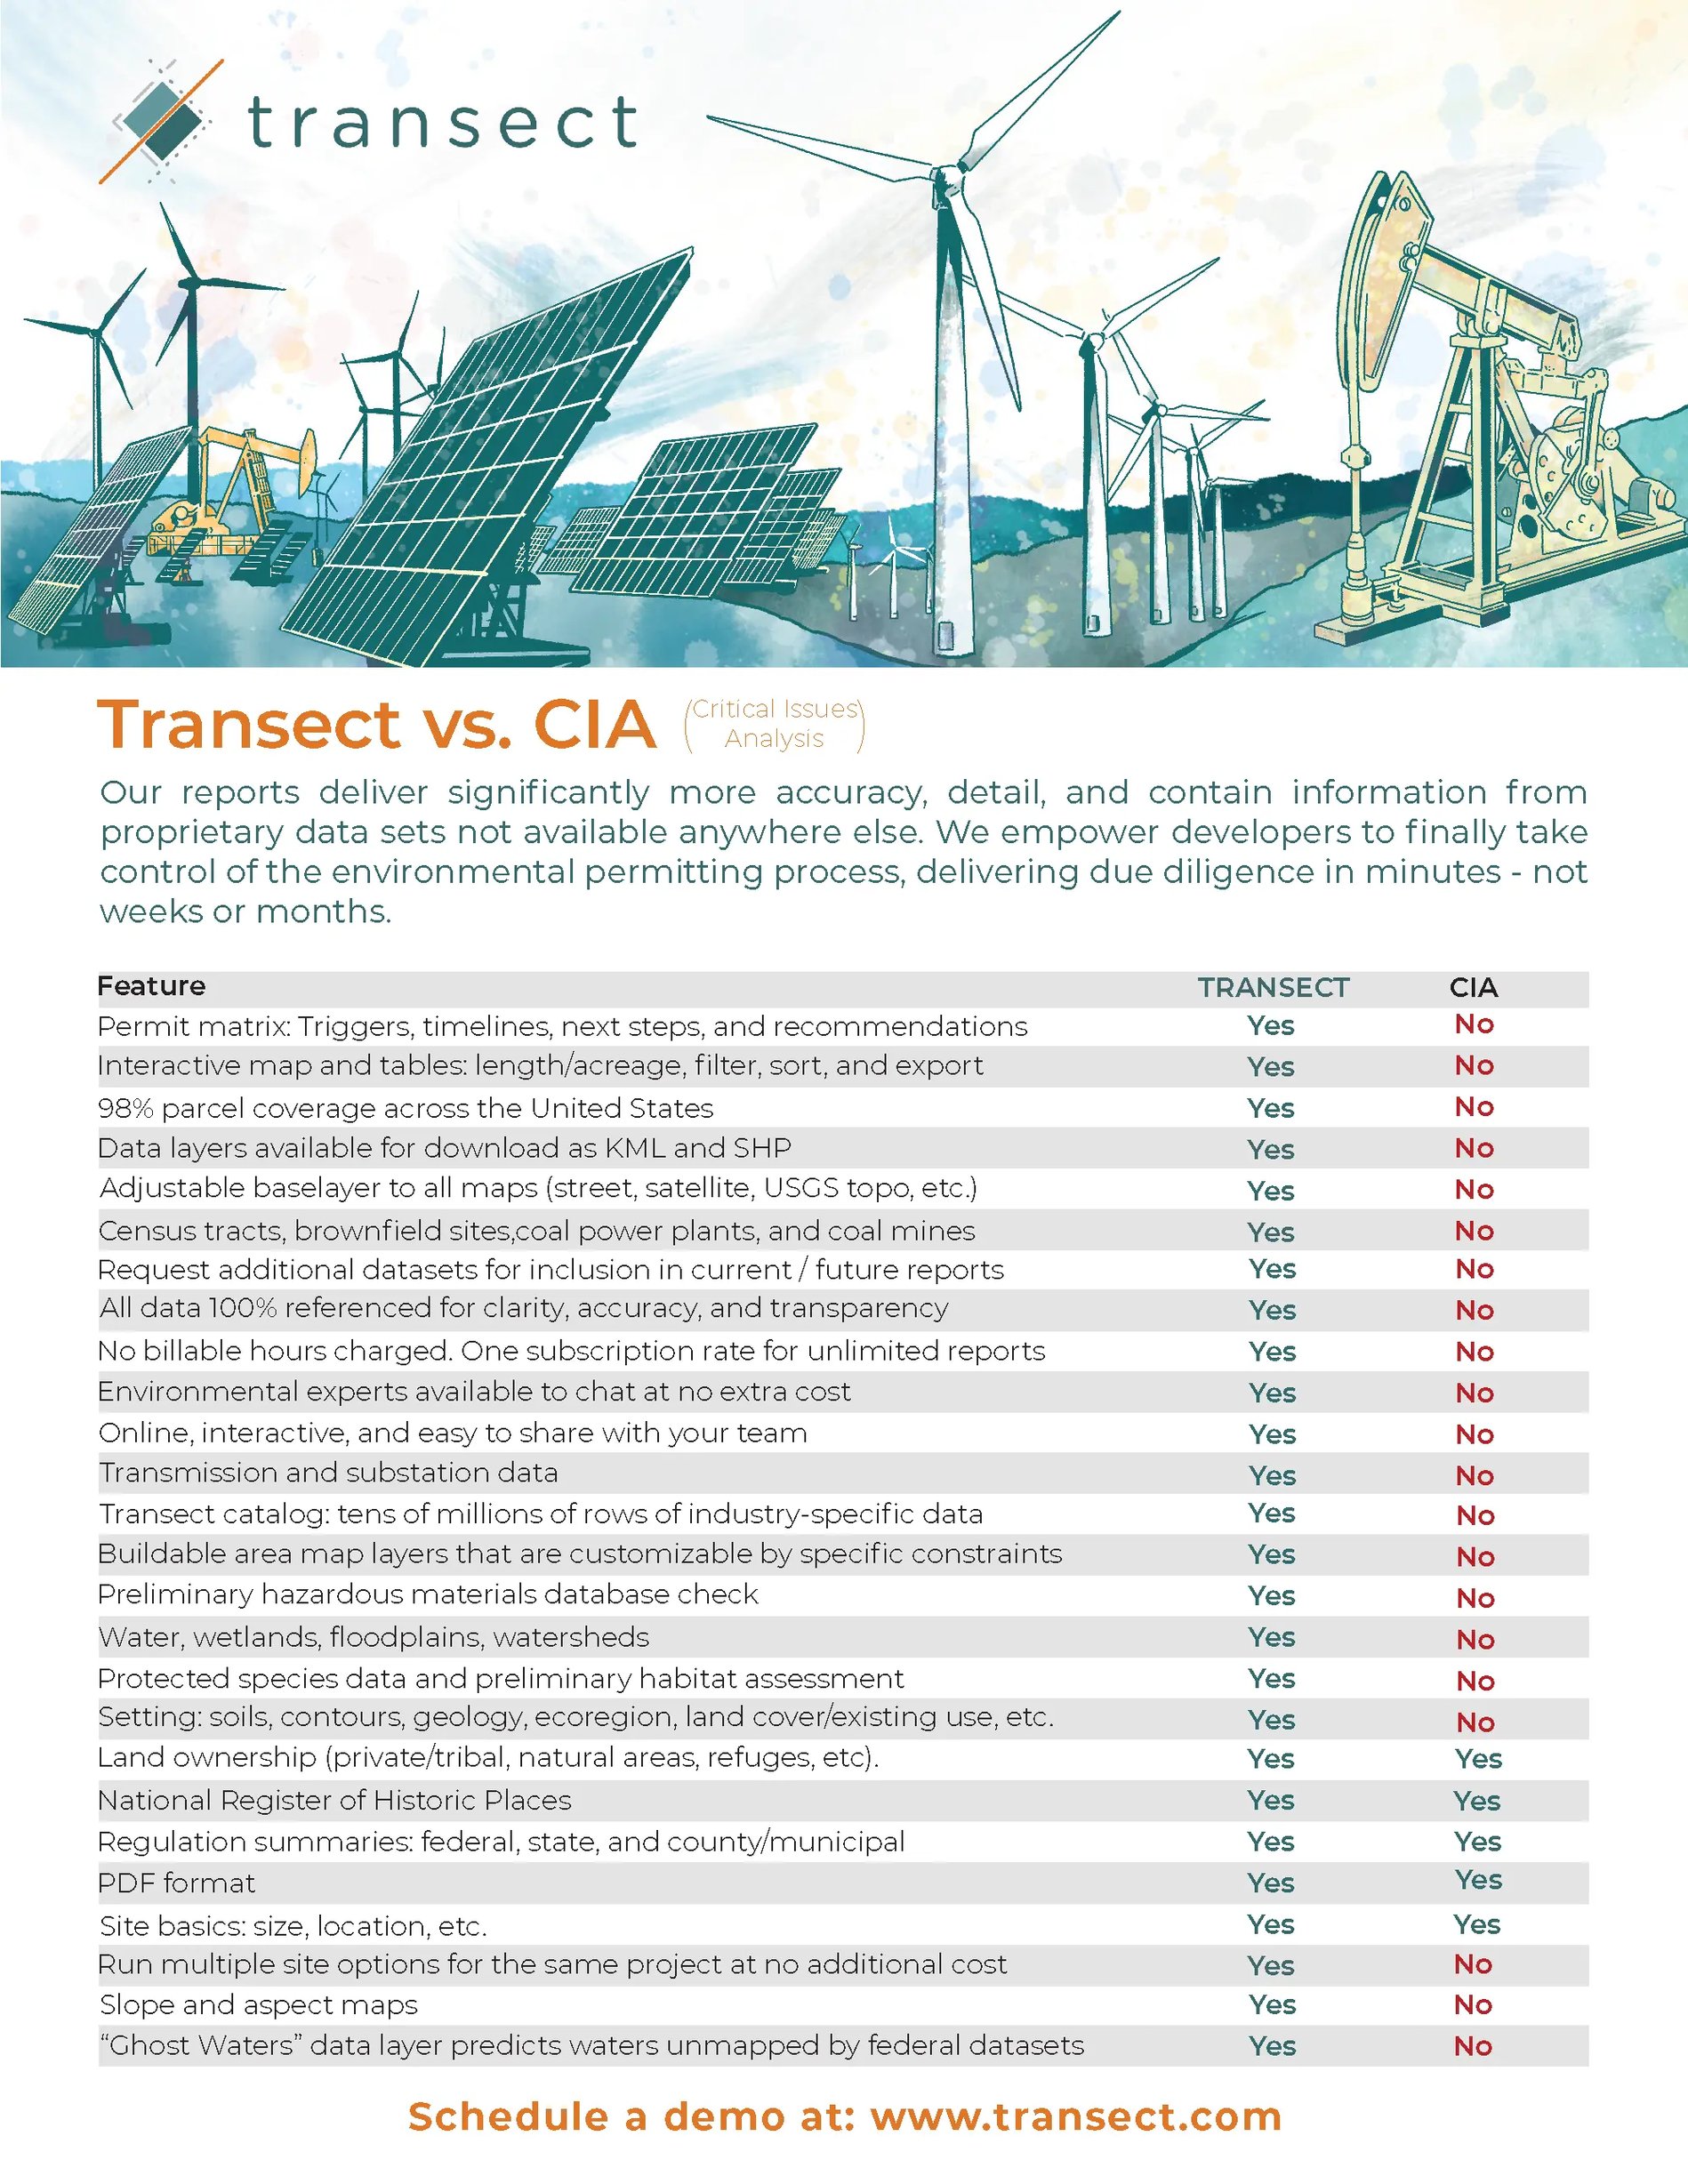 Transect_vs_CIA